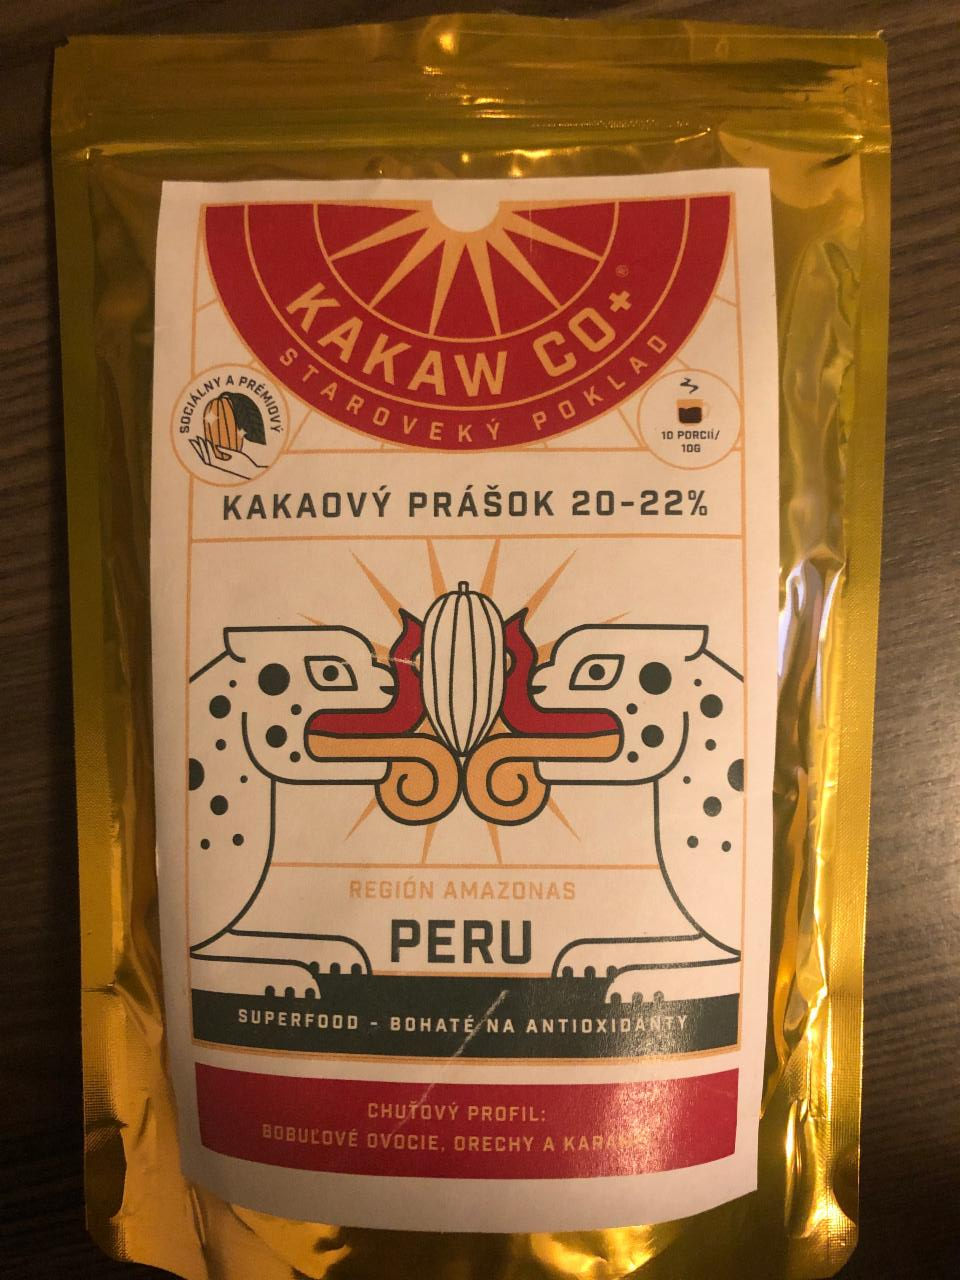 Fotografie - Kakaový prášok 20-22% Peru Kakaw co+